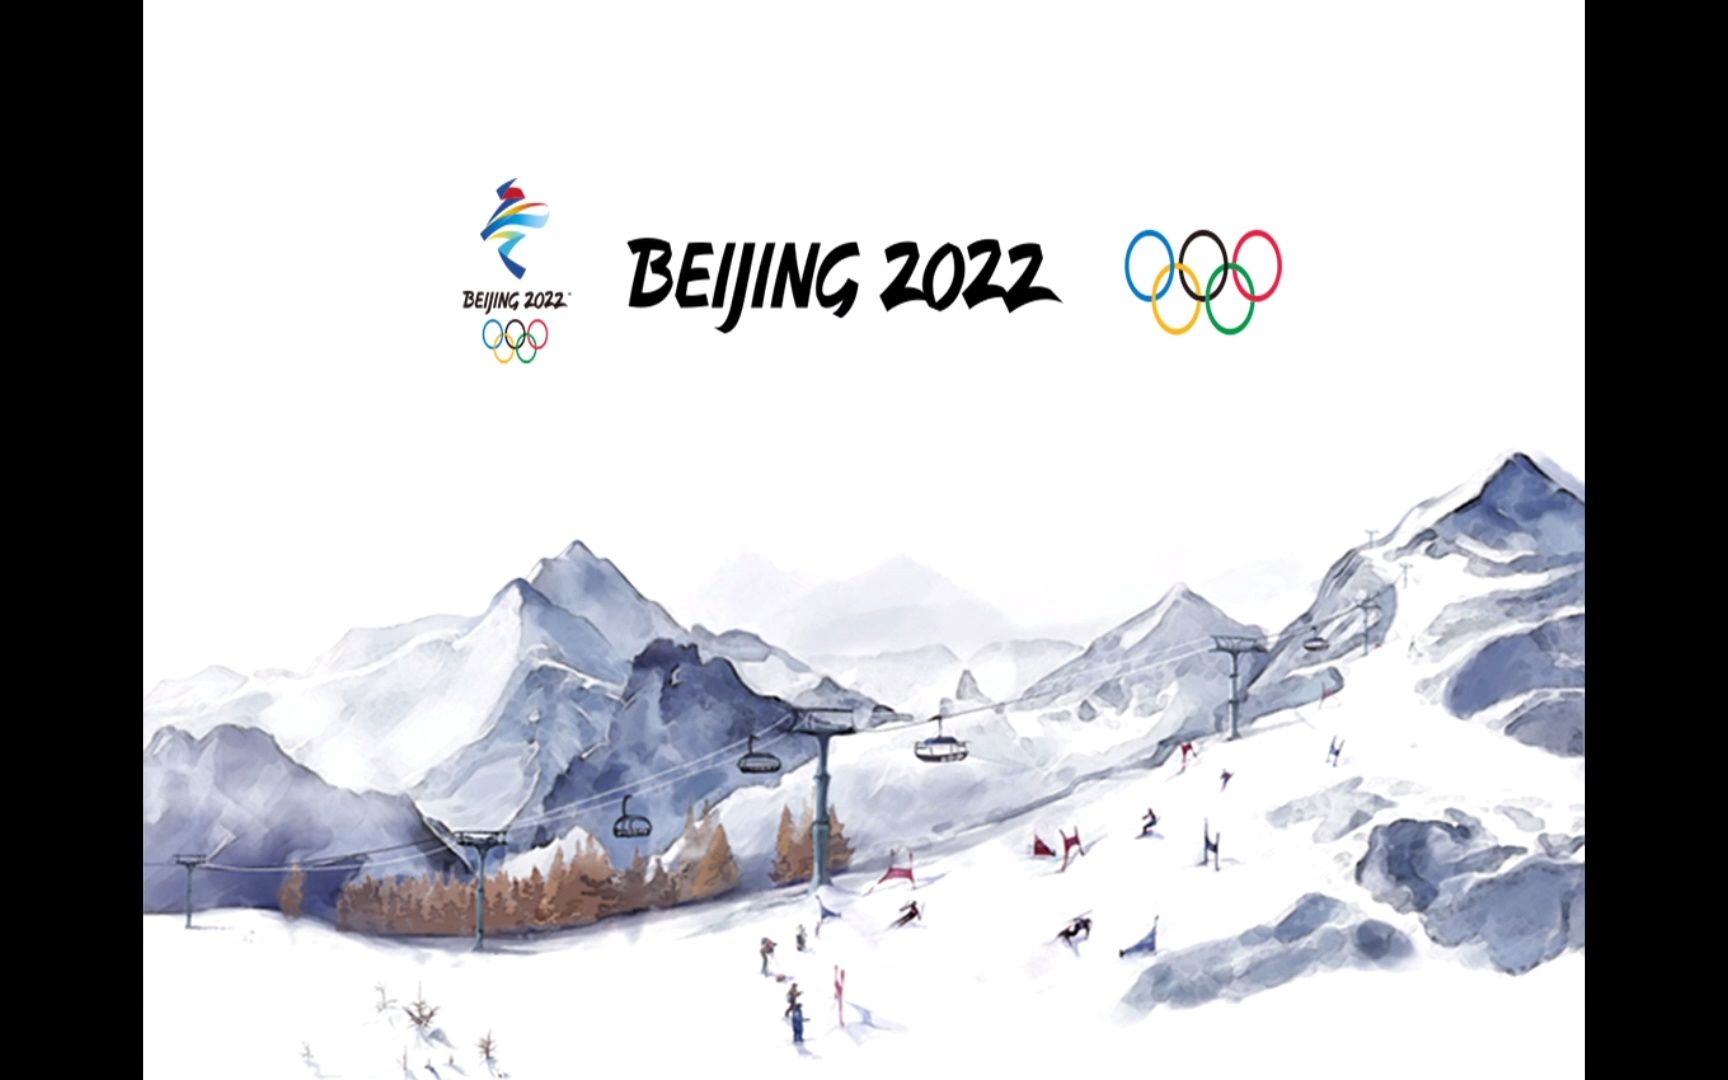 2022冬奥会高清背景图图片